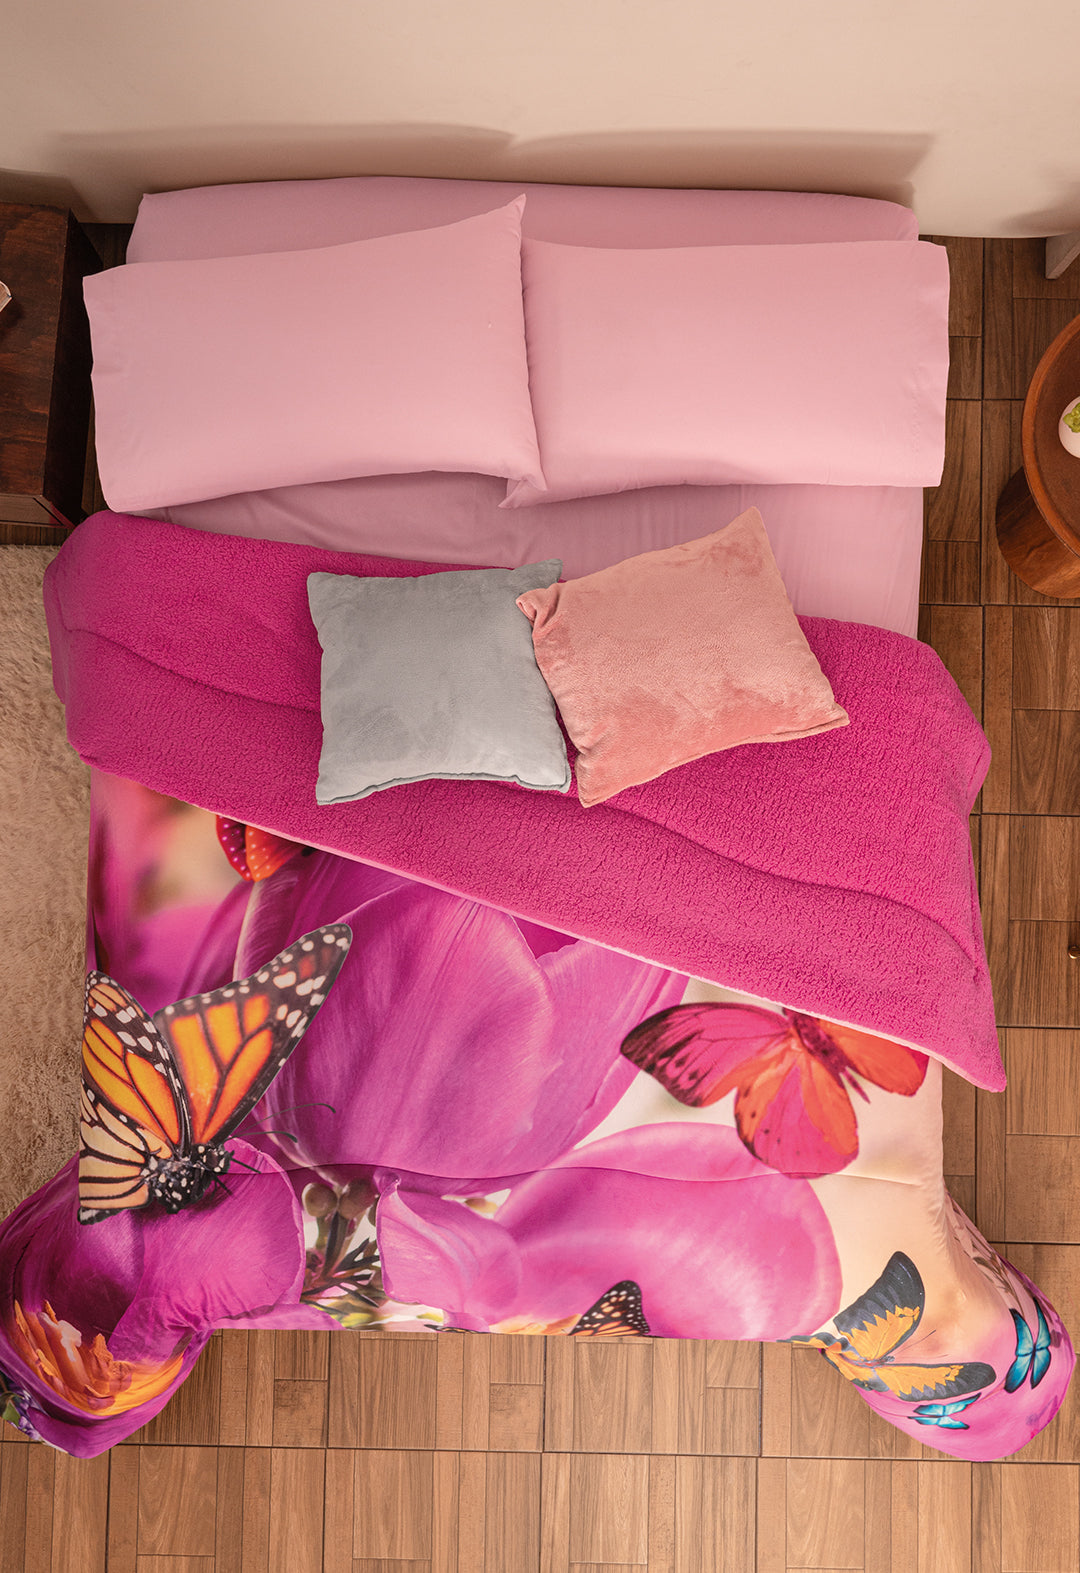 El Cobertor Mariposa, es un cobertor con un diseño hermosos con mariposas de colores&nbsp; y fondo de diseño floral Fushia.